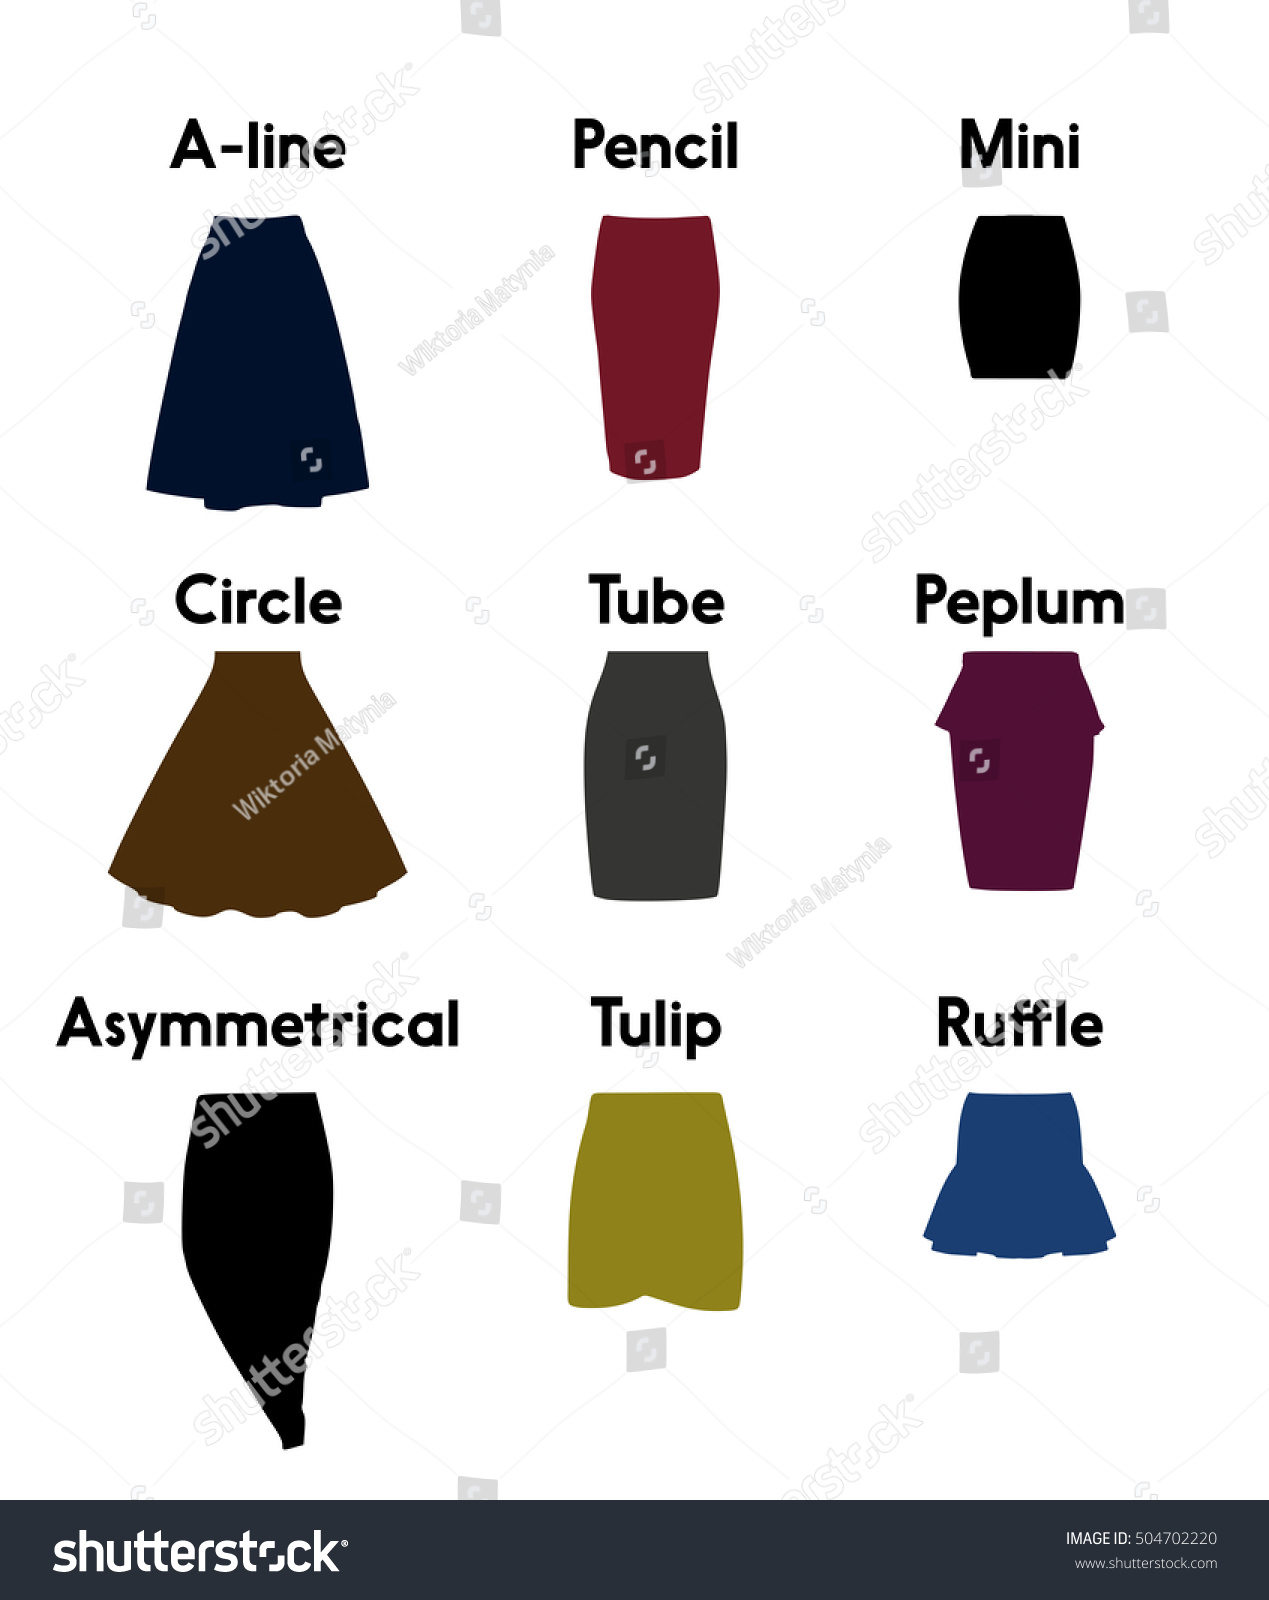 Skirt Types Vector - 504702220 : Shutterstock